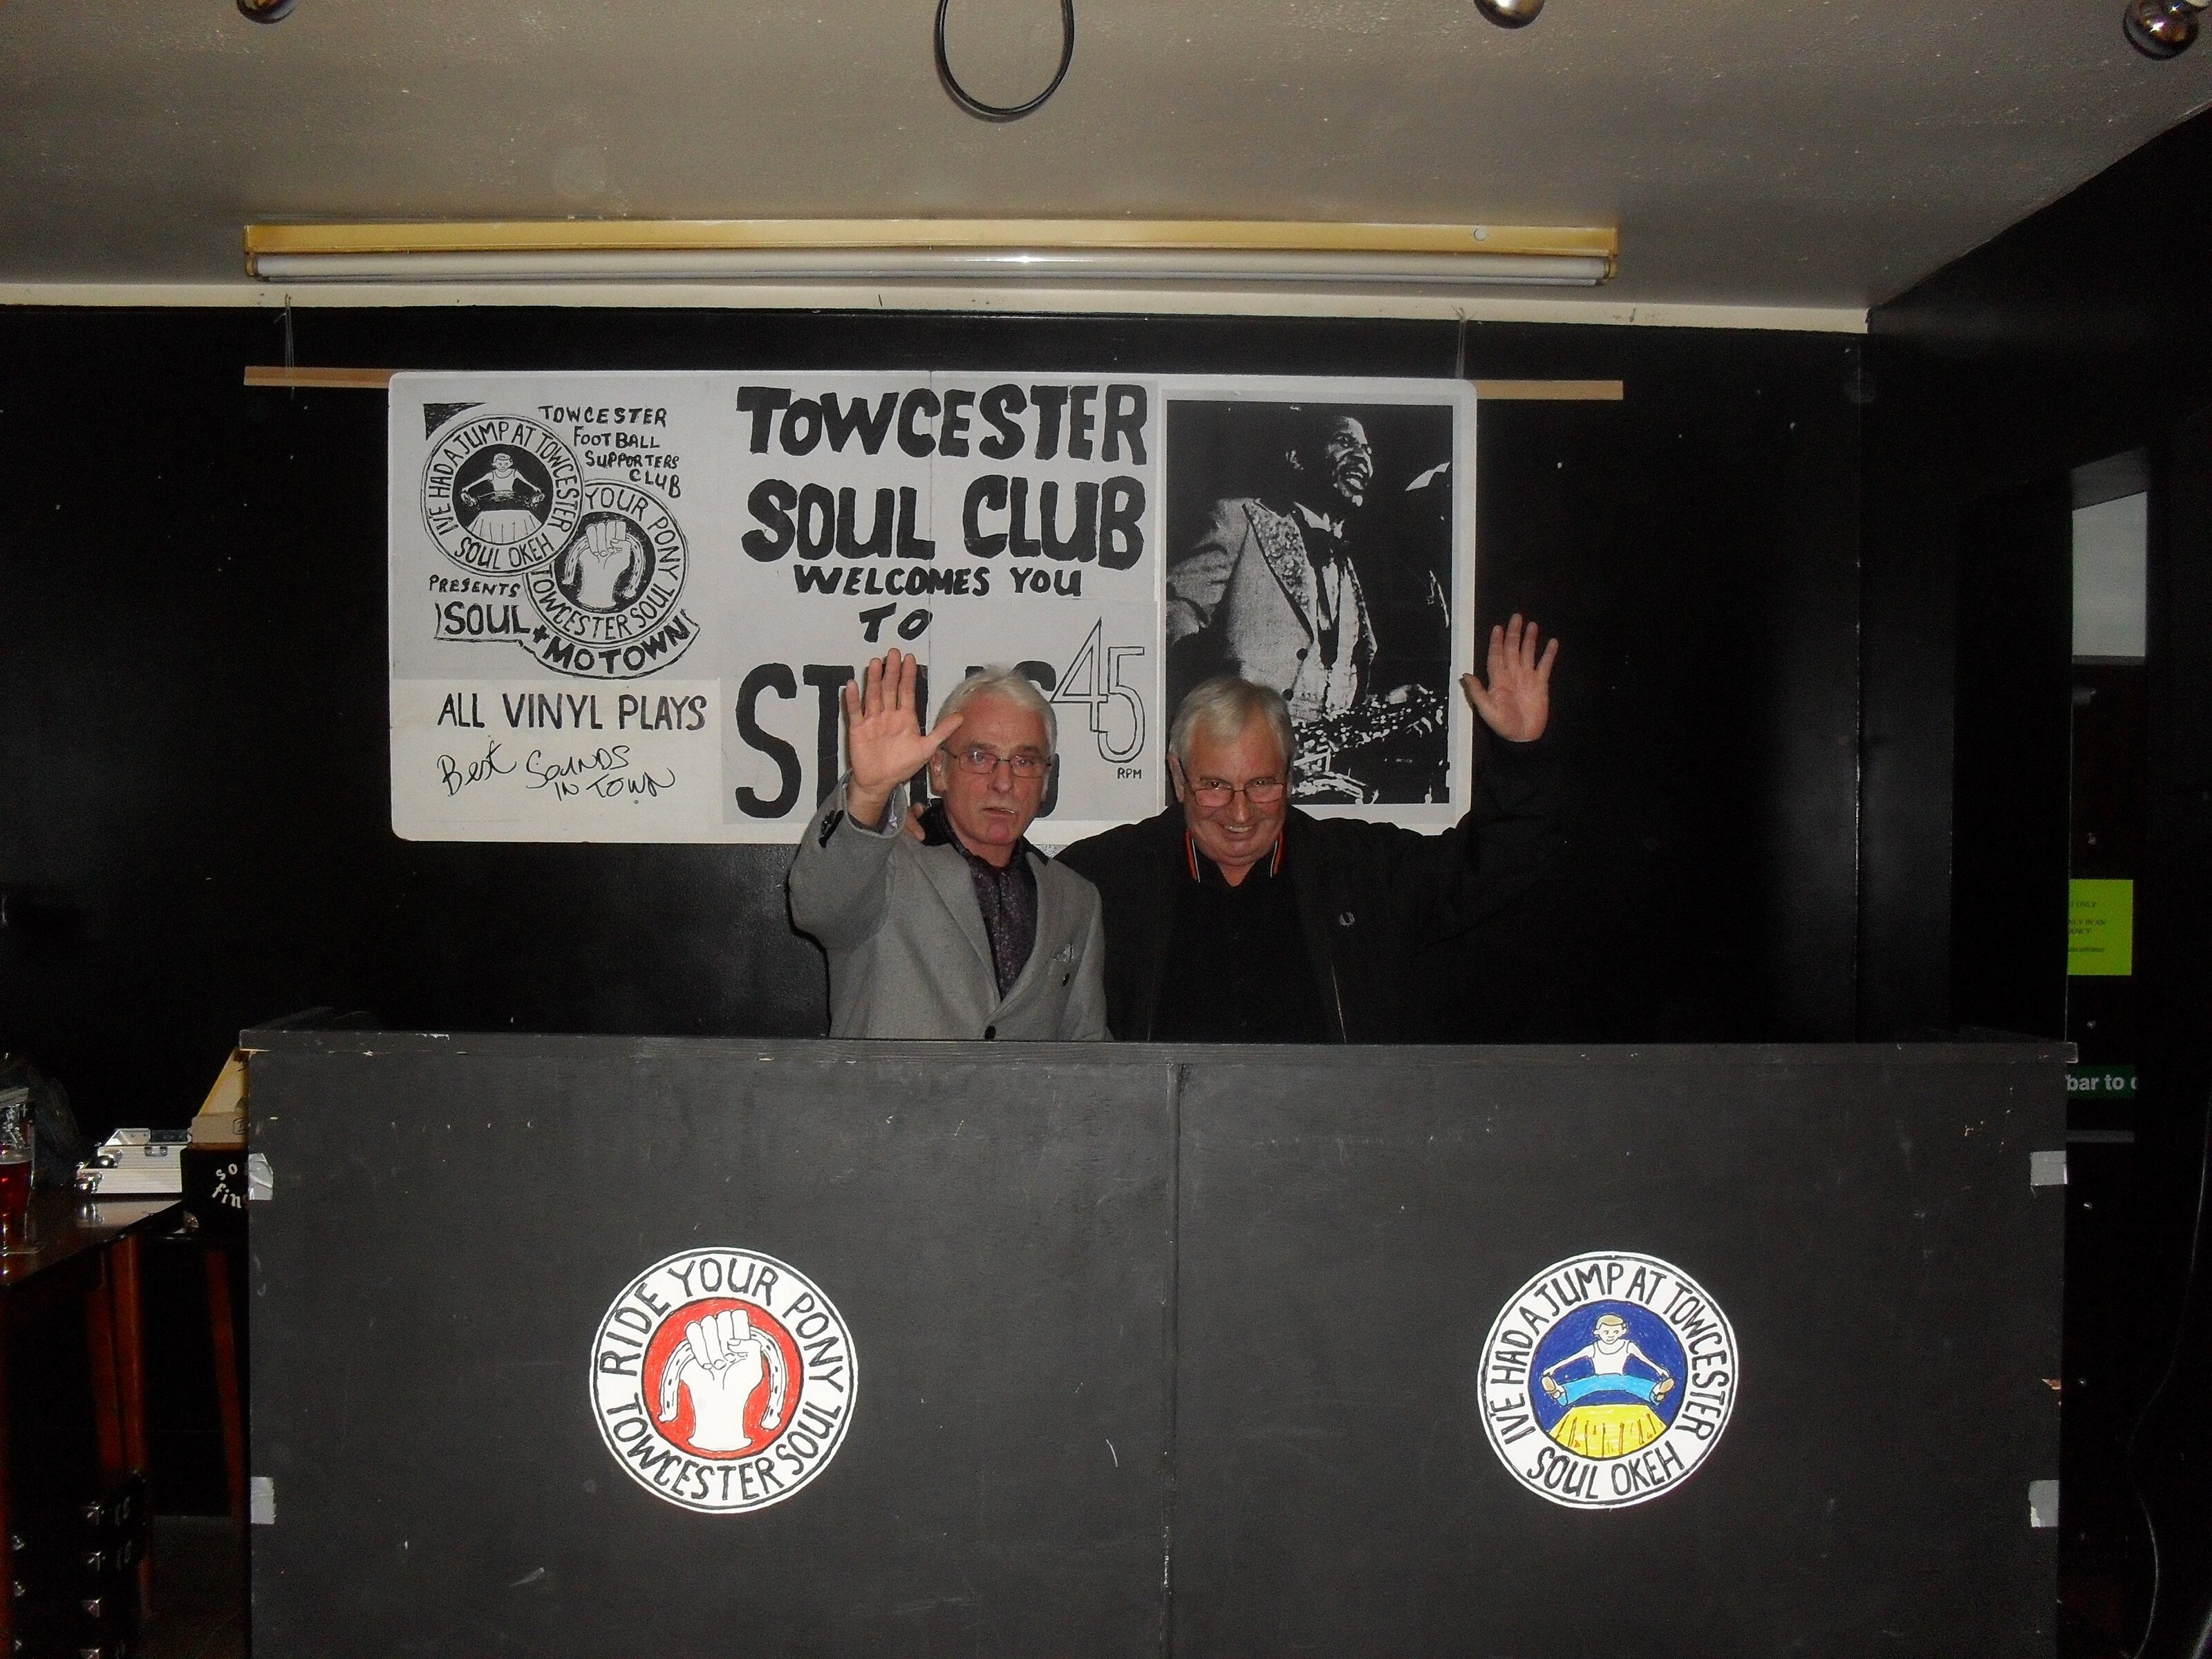 Towcester Soul Club